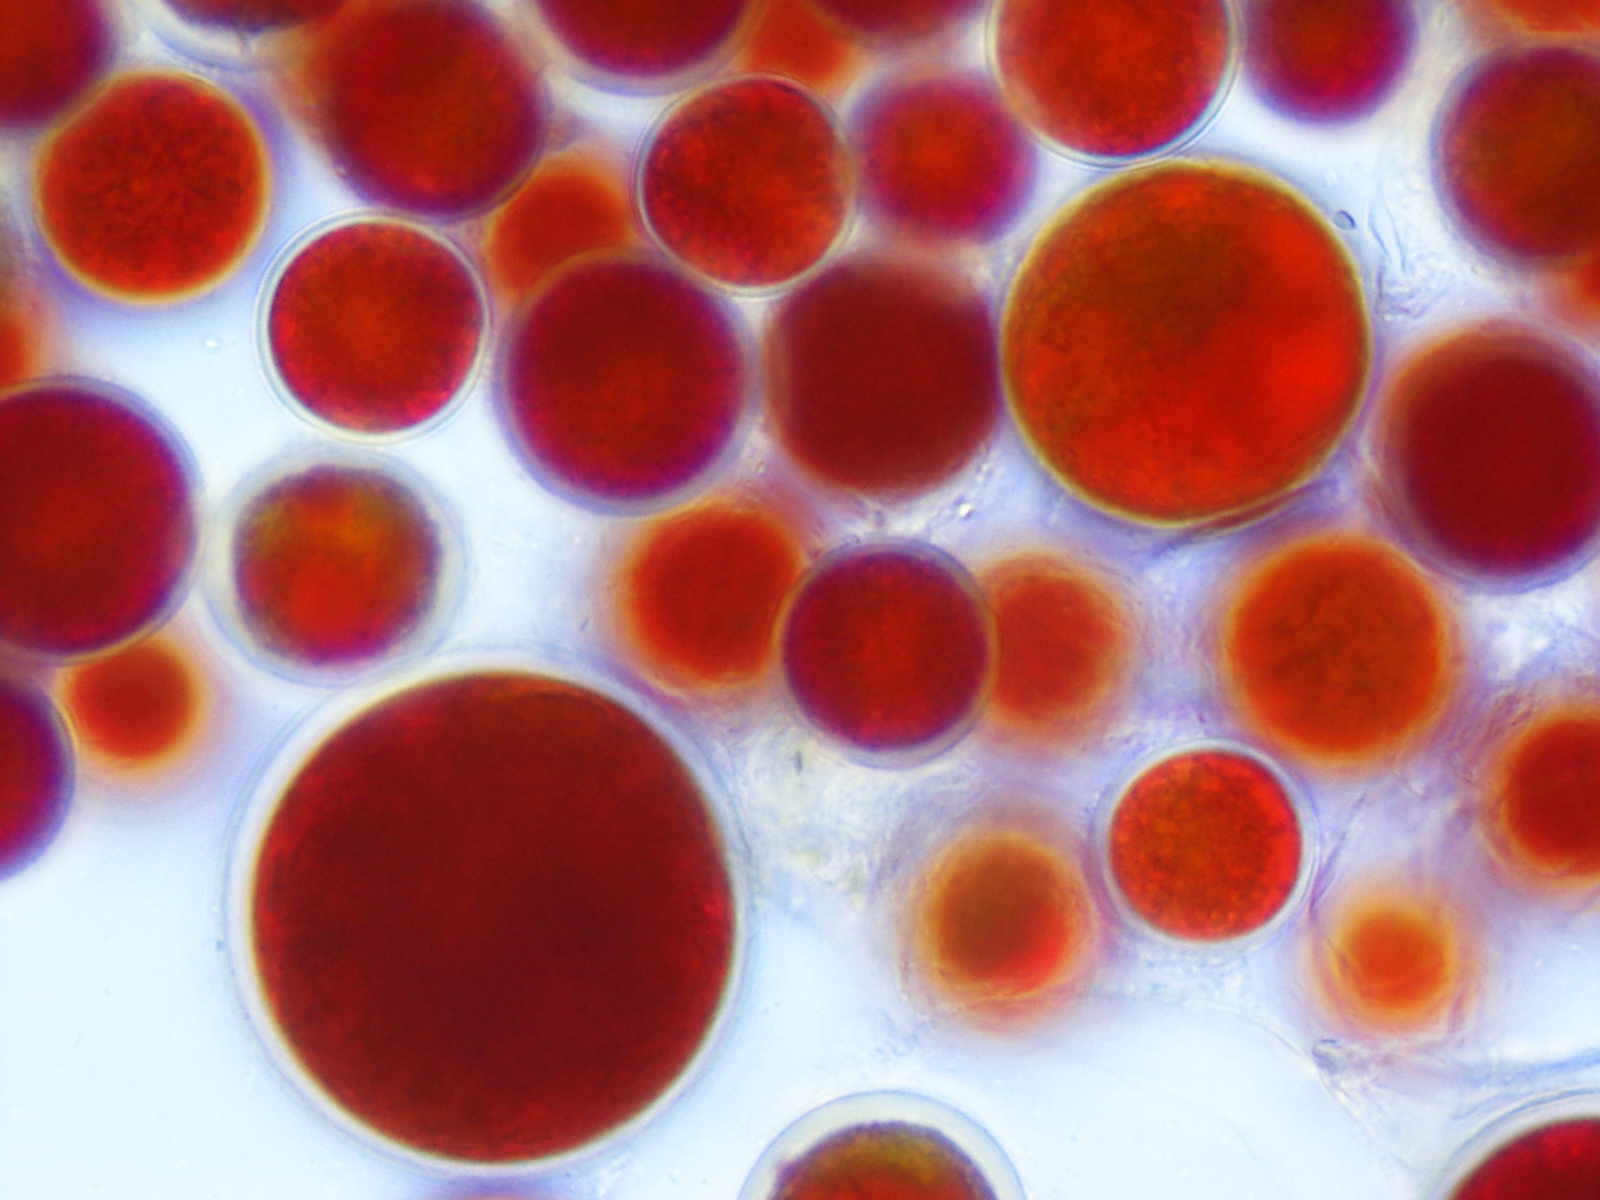 Haematococcus pluvialis – Astaxanthin